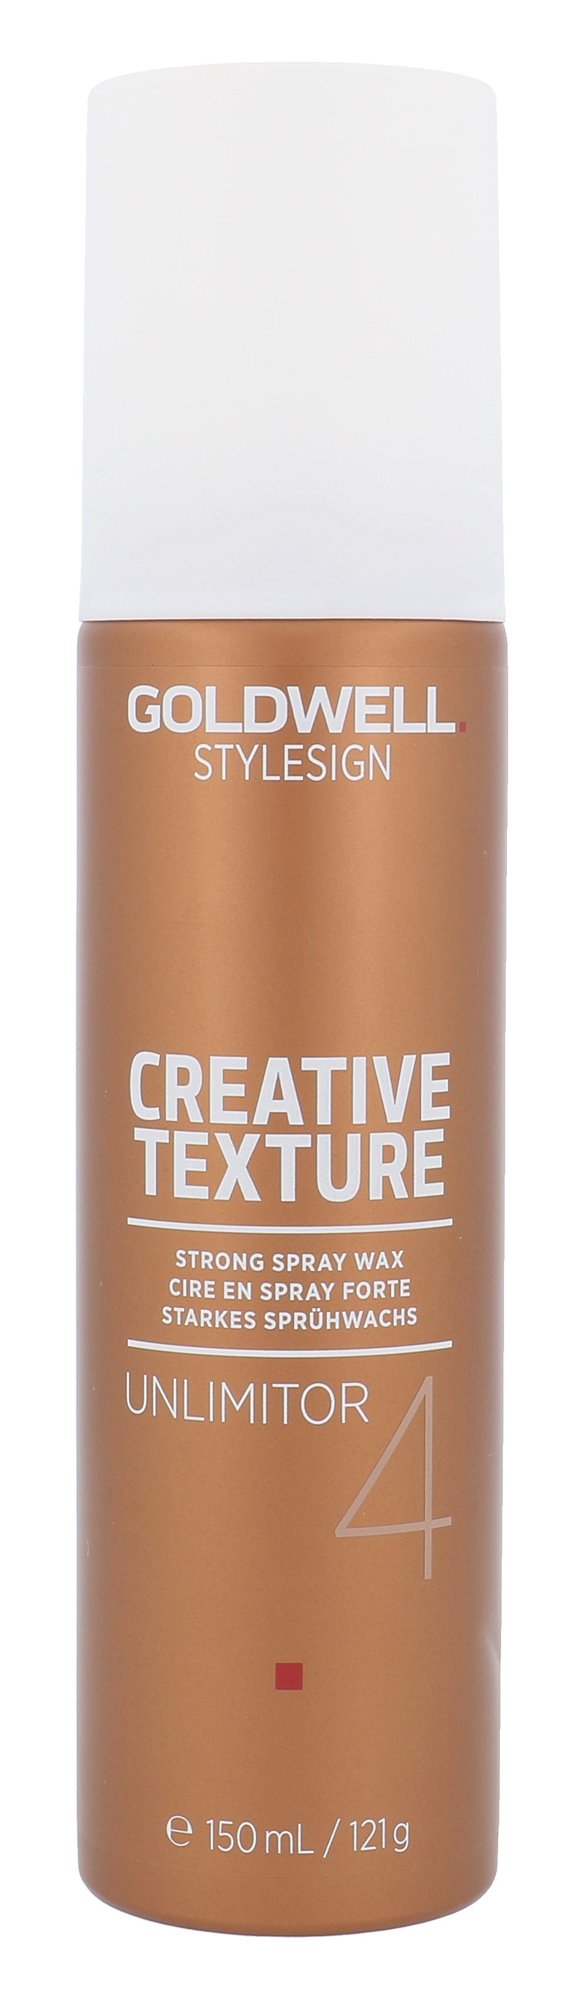 Goldwell Style Sign Creative Texture plaukų vaškas